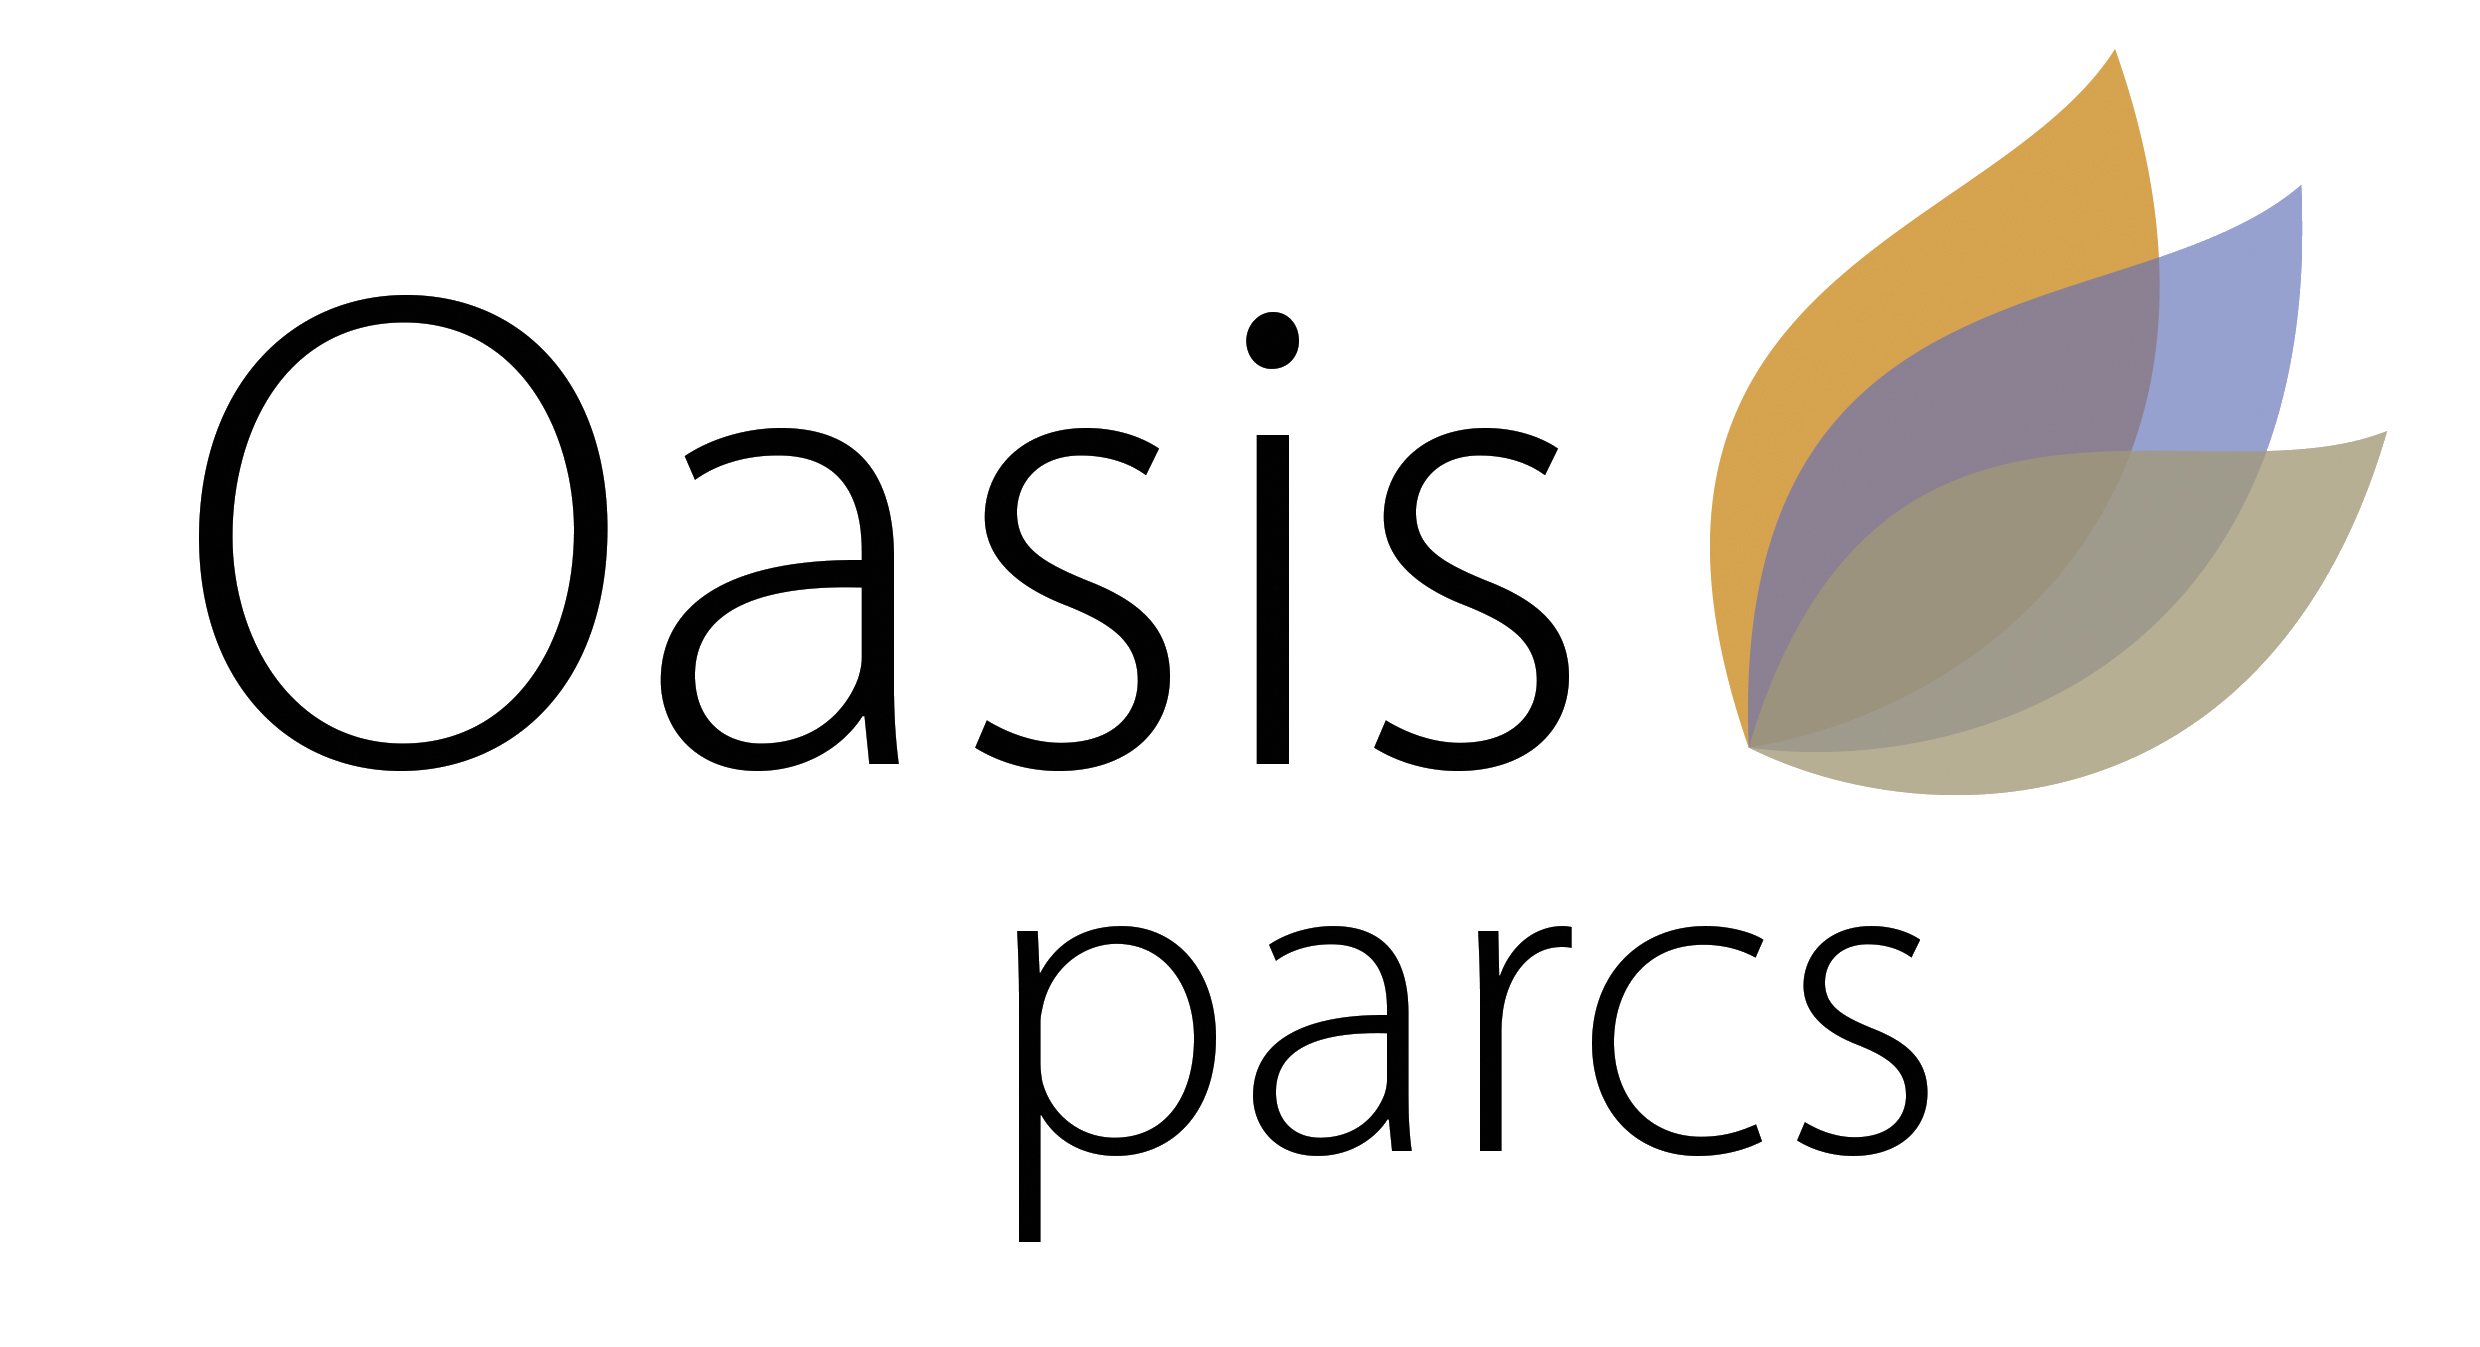 Oasisparcs.nl reviews, beoordelingen en ervaringen